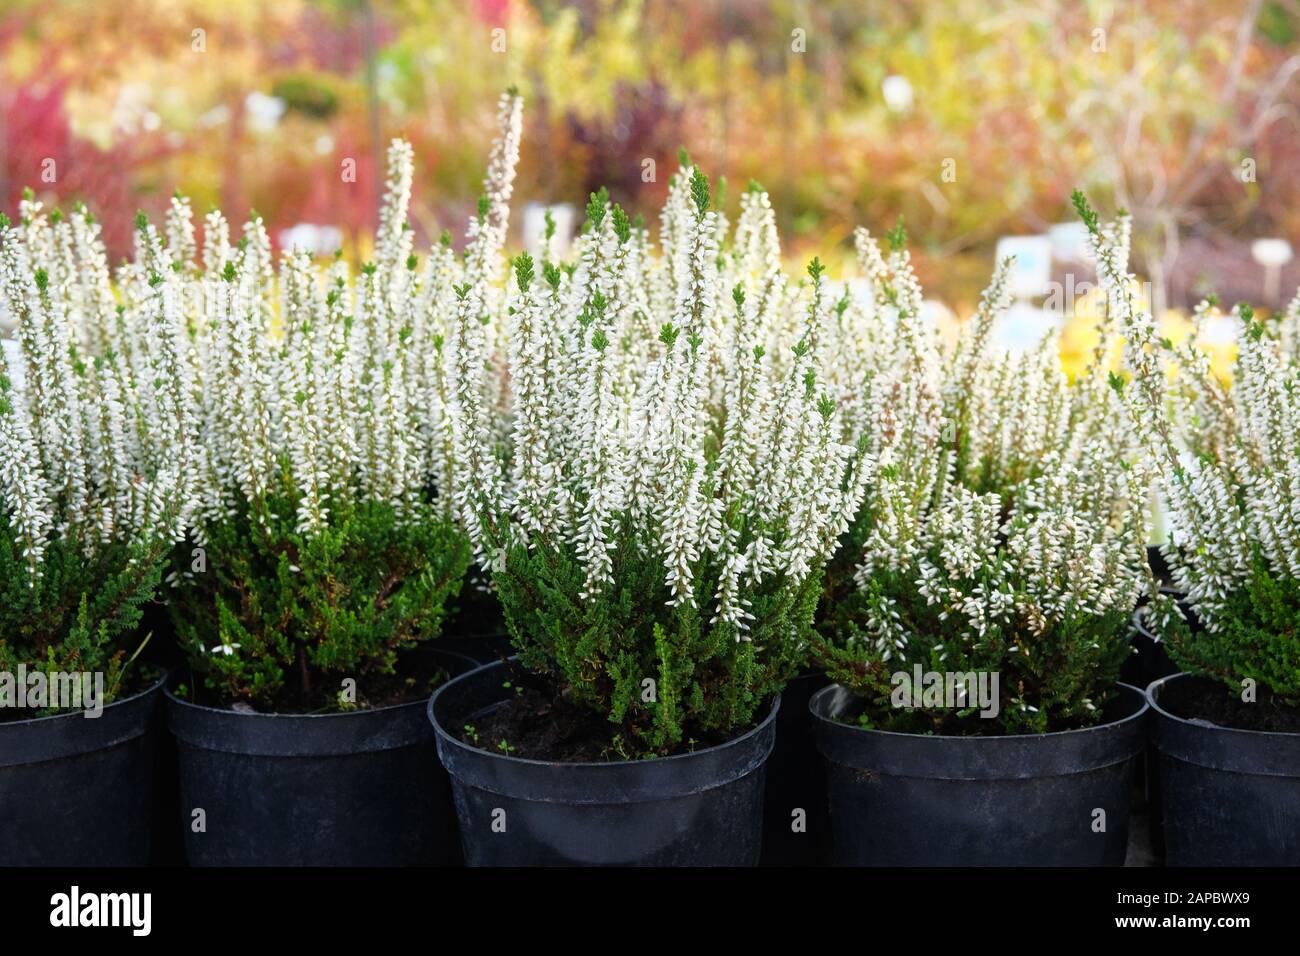 Gartengeschäft. Heather of White Color (Calluna vulgaris) in schwarzen Töpfen zum Verkauf angeboten. Gärtnerei mit Pflanzen und Blumen für die Gartenarbeit. Stockfoto